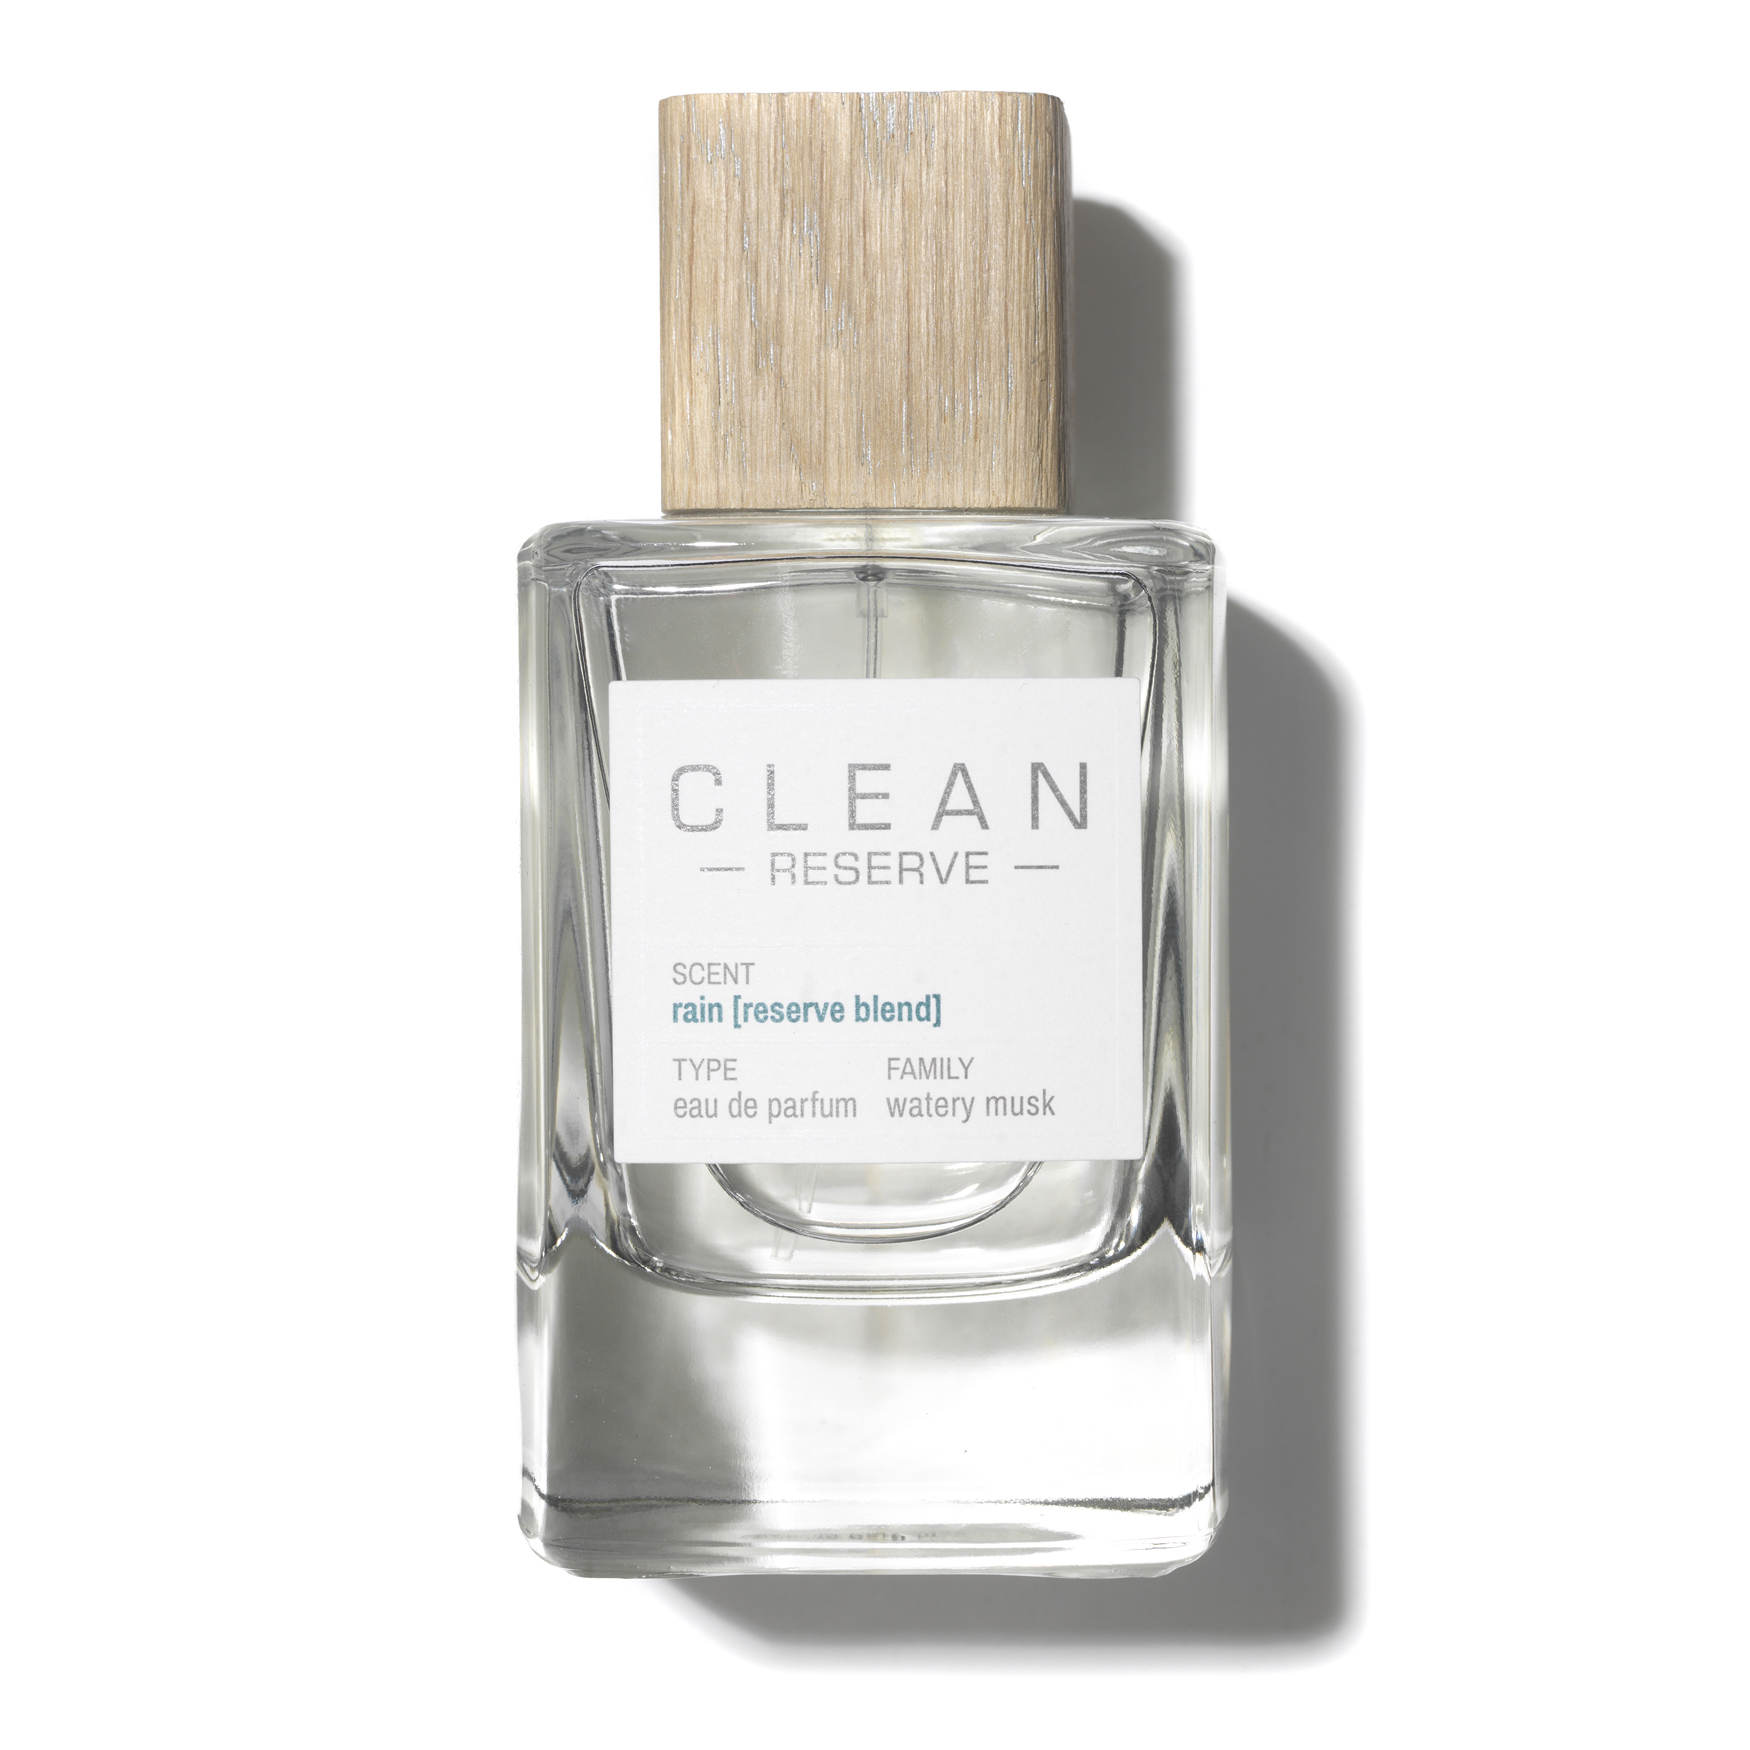 Clean Reserve Rain [Reserve Blend] Eau de Parfum | Space NK